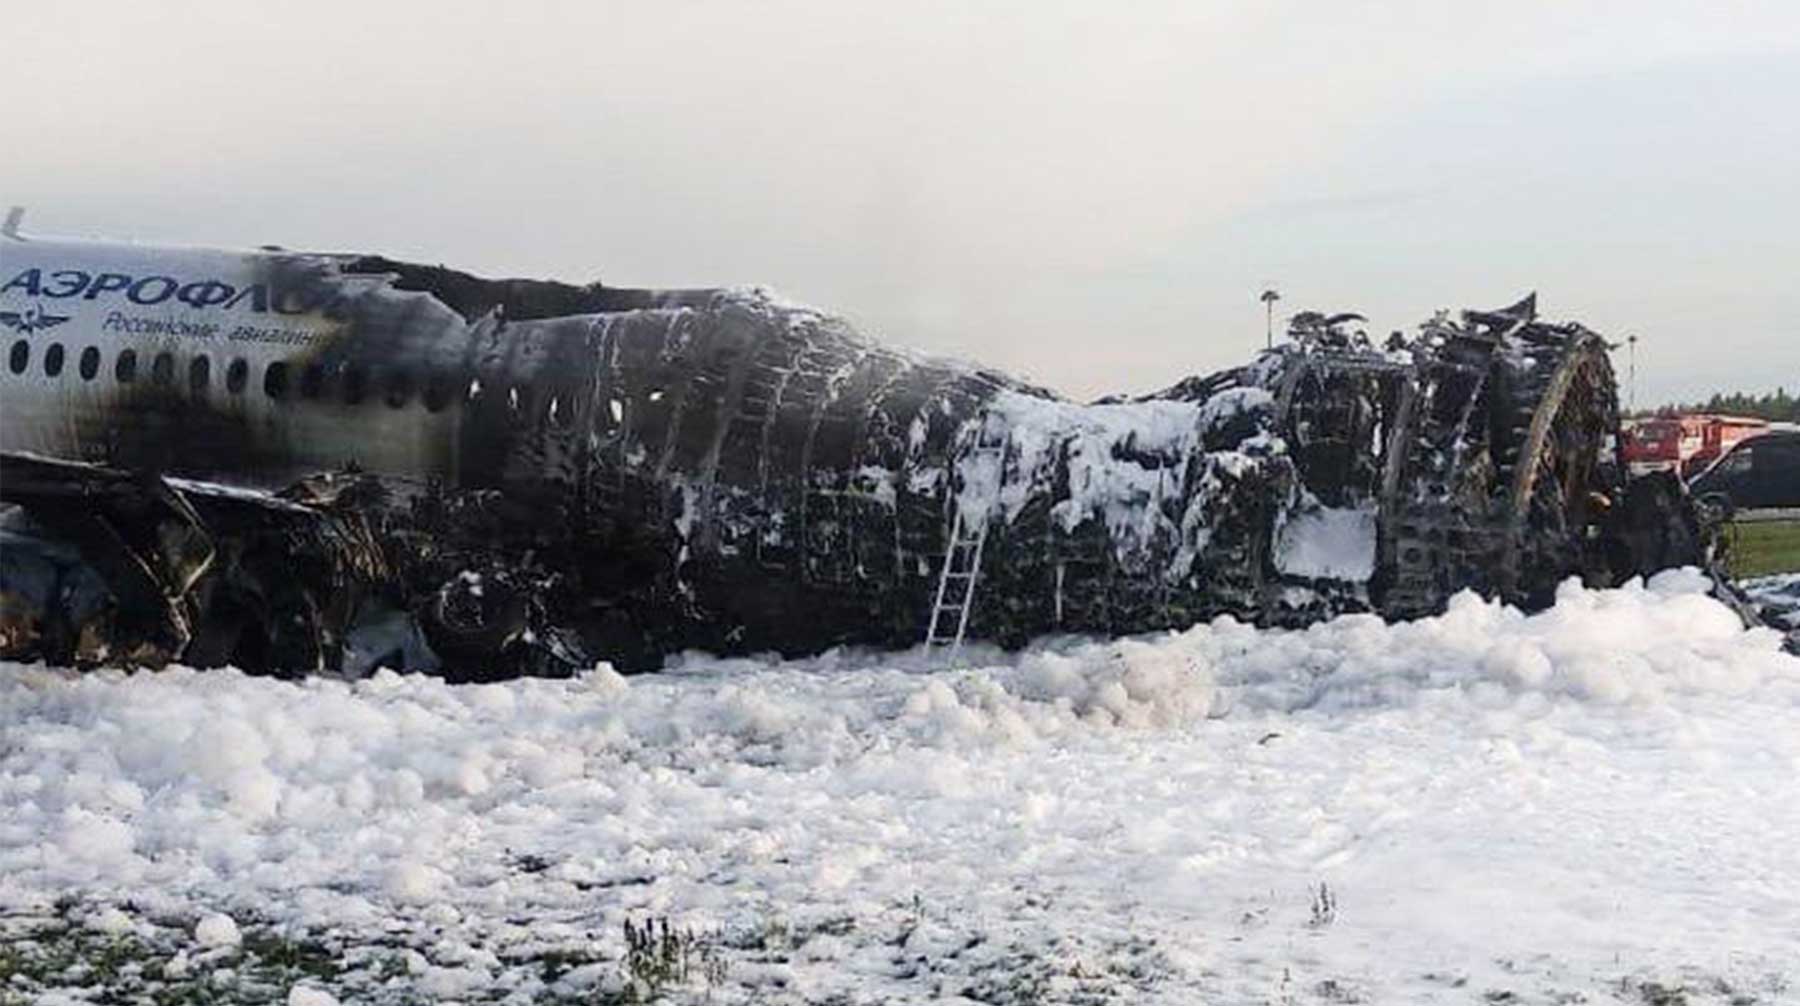 Незадолго до трагедии летчик сообщил, что потеряны связь и автоматическое управление Фото: © Агентство Москва